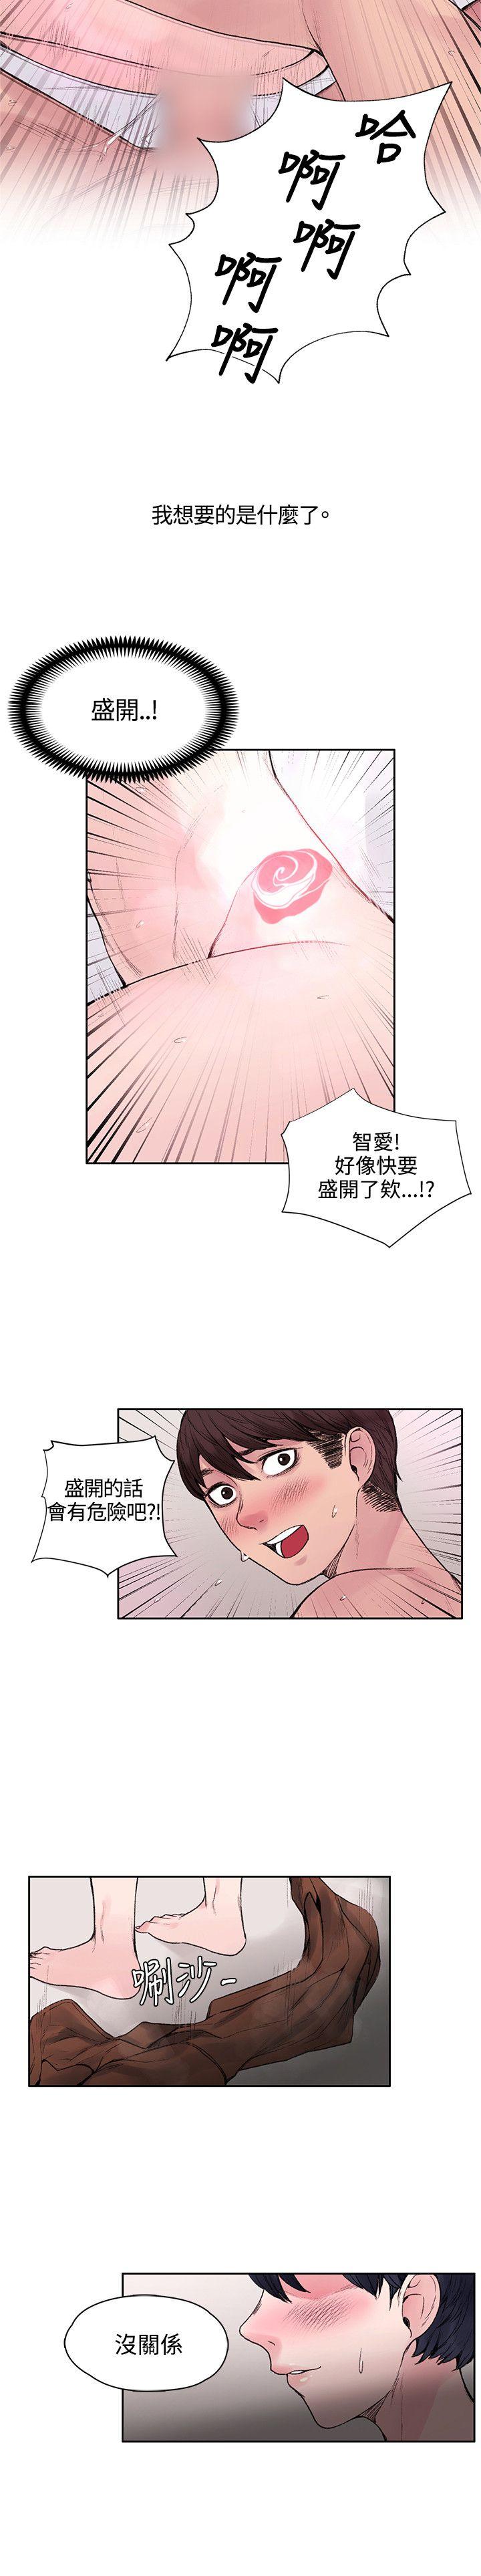 韩国污漫画 那裡的香氣 第16话 24